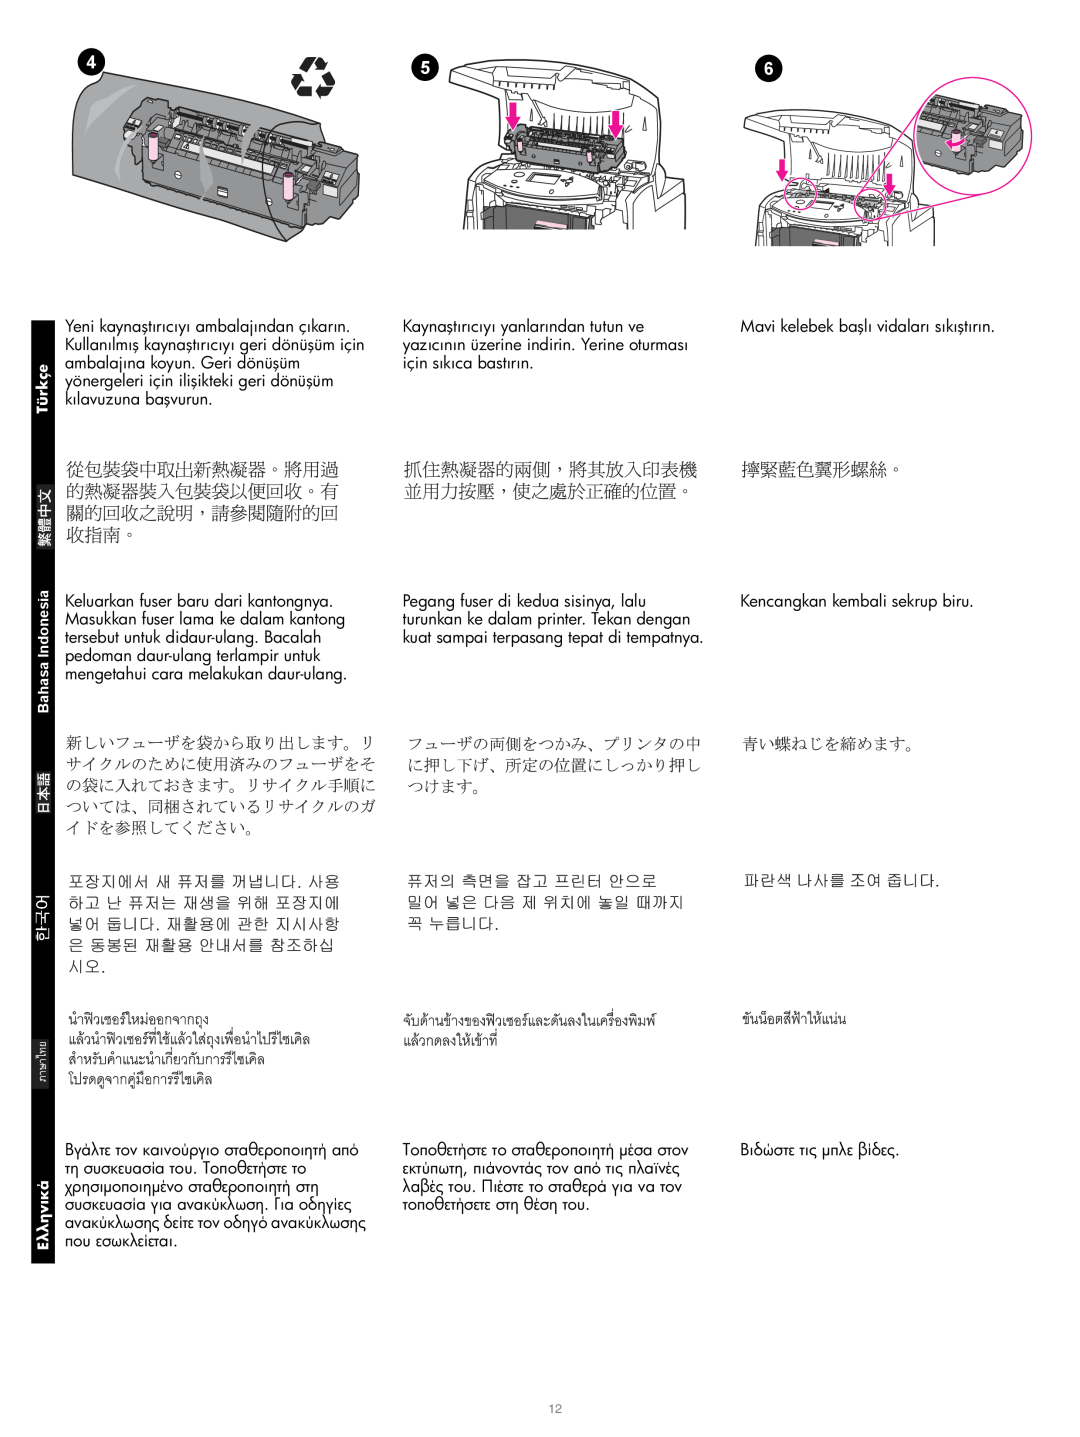 HP Q3675A Image Transfer Kit, Q3676A 110V Image Fuser Kit manual Mavi kelebek başlı vidaları sıkıştırın 